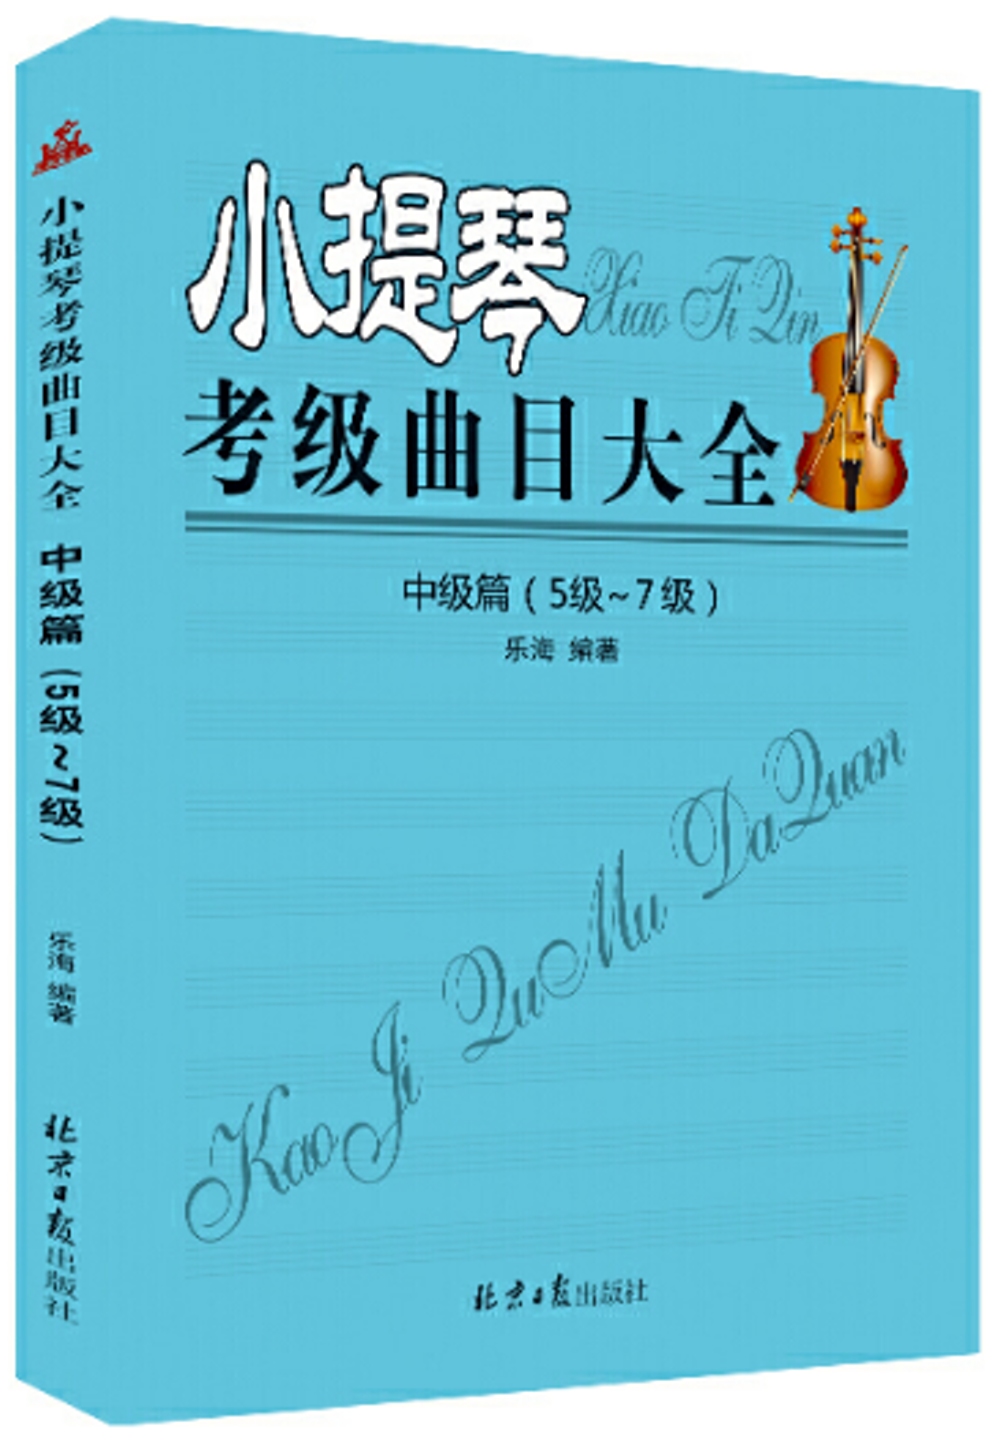 小提琴考級曲目大全：初級篇(5-7級)